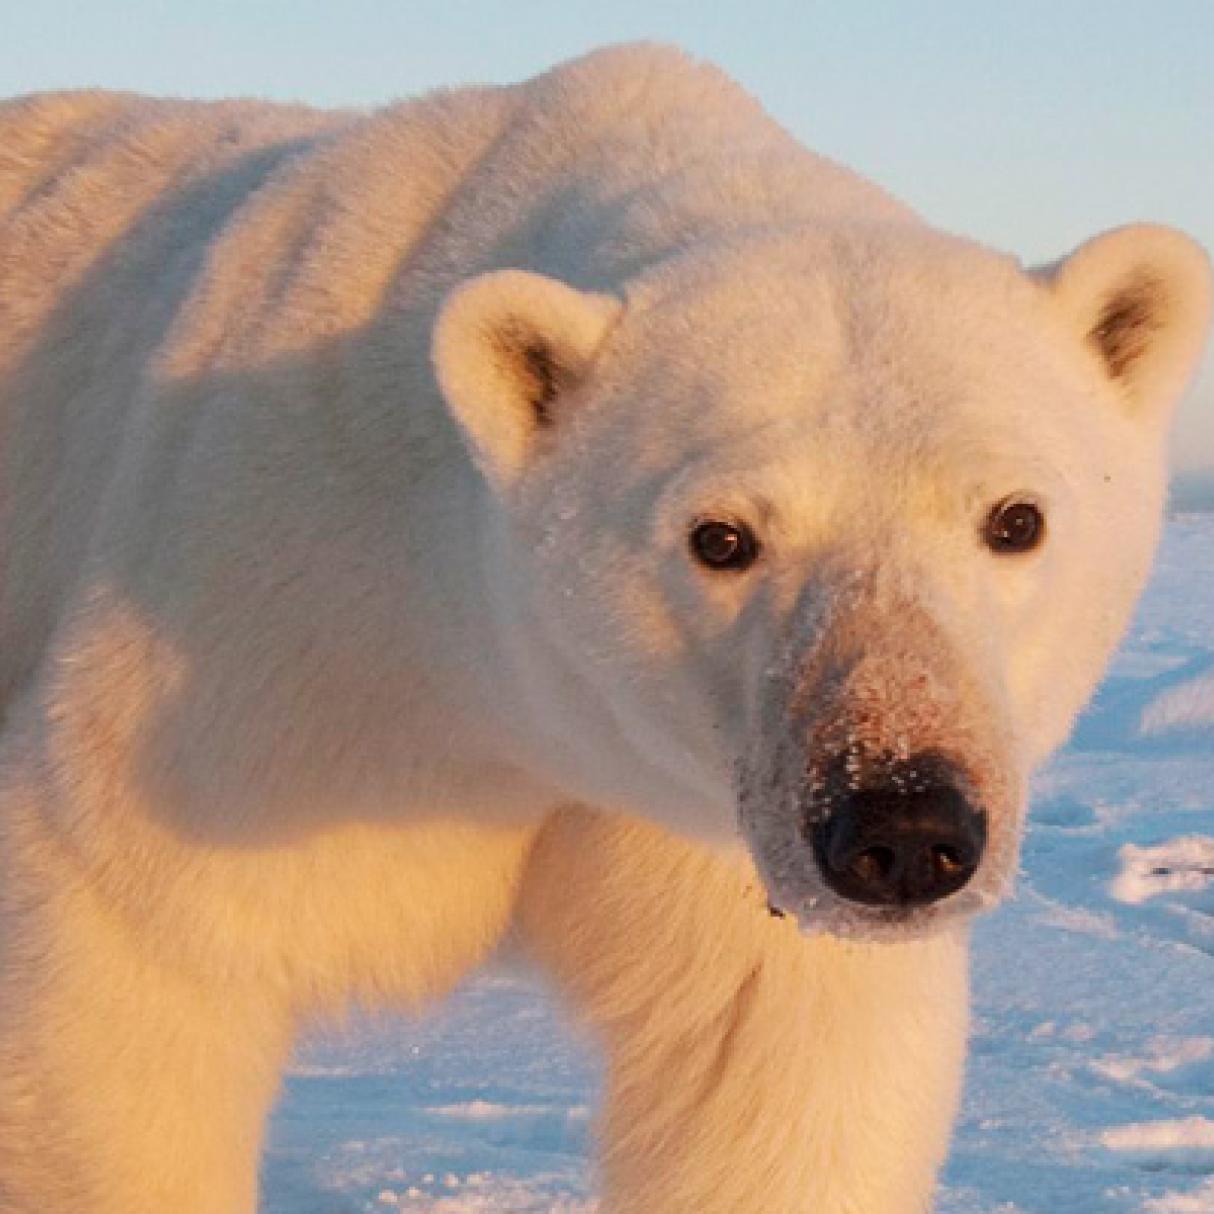 Polar bear in Churchill Manitoba Canada